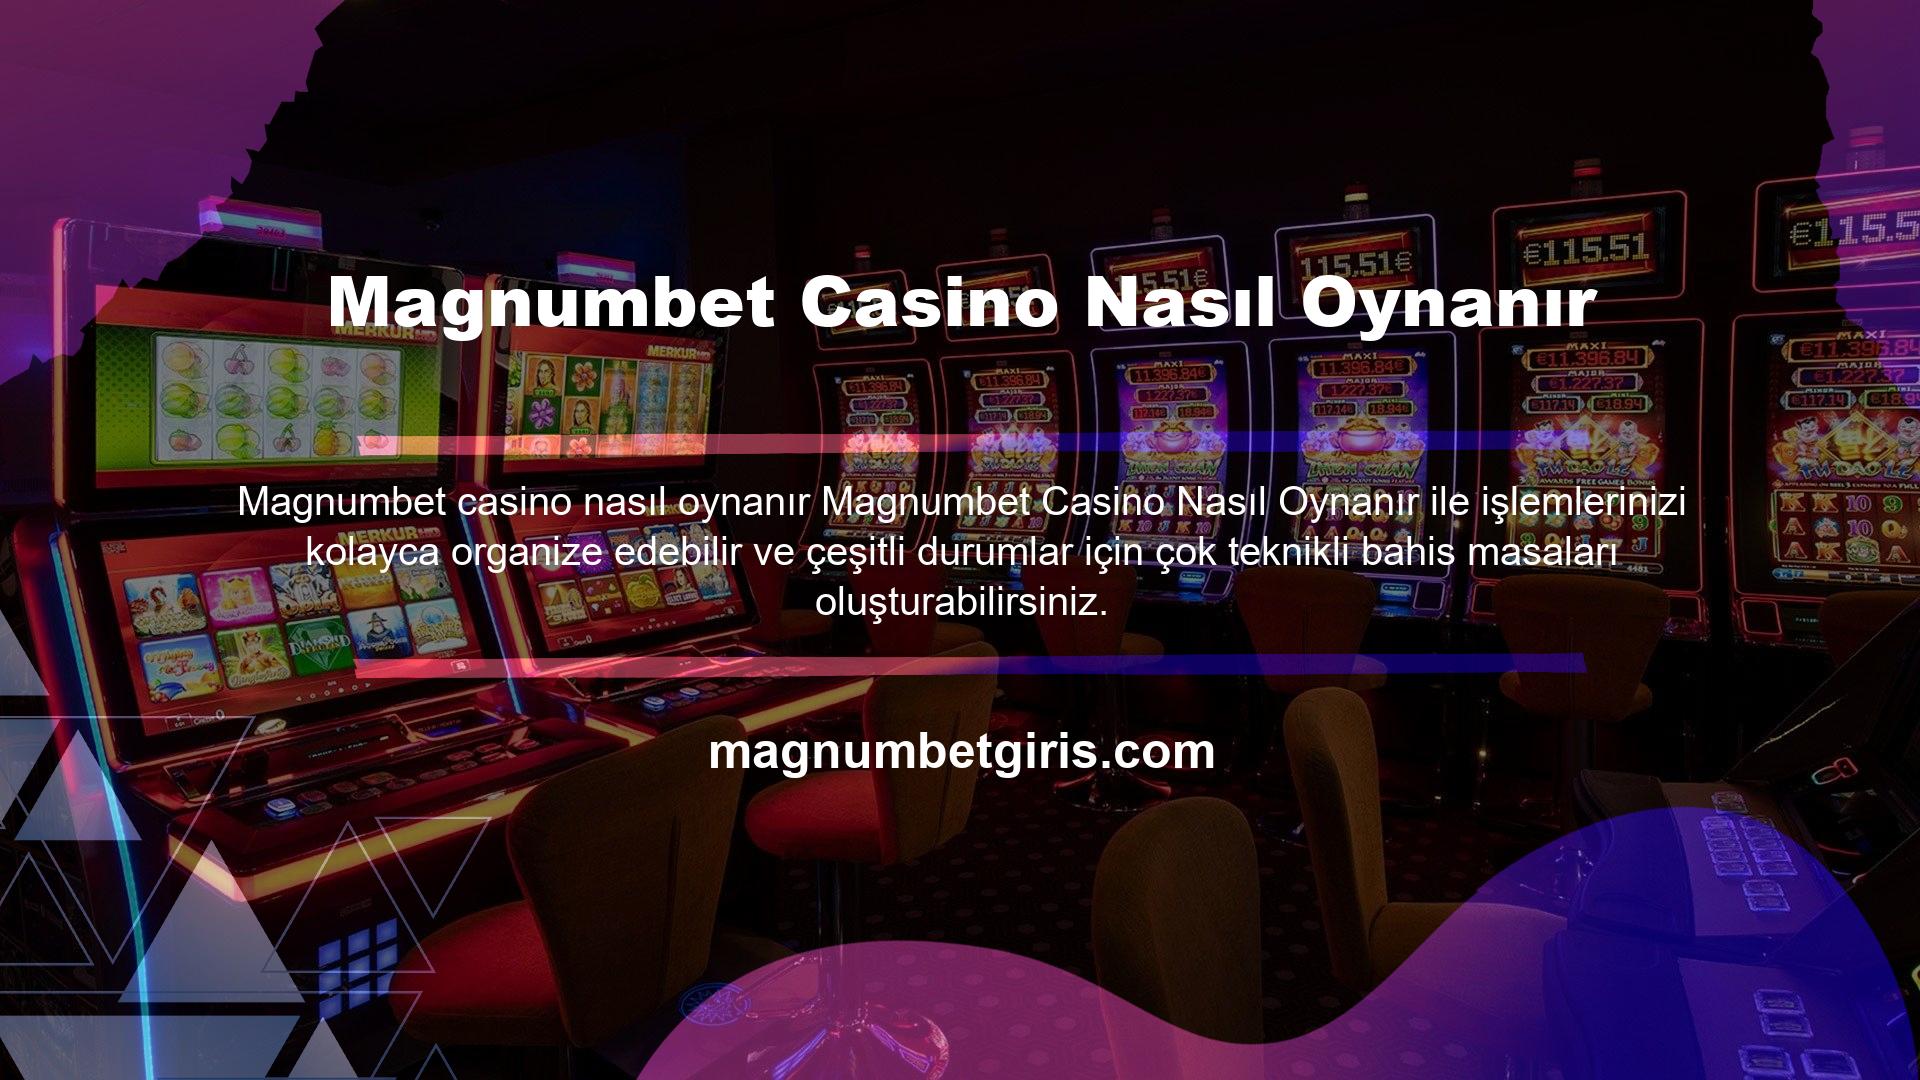 Magnumbet mobil casino nasıl oynanır sorusunun cevabı basit